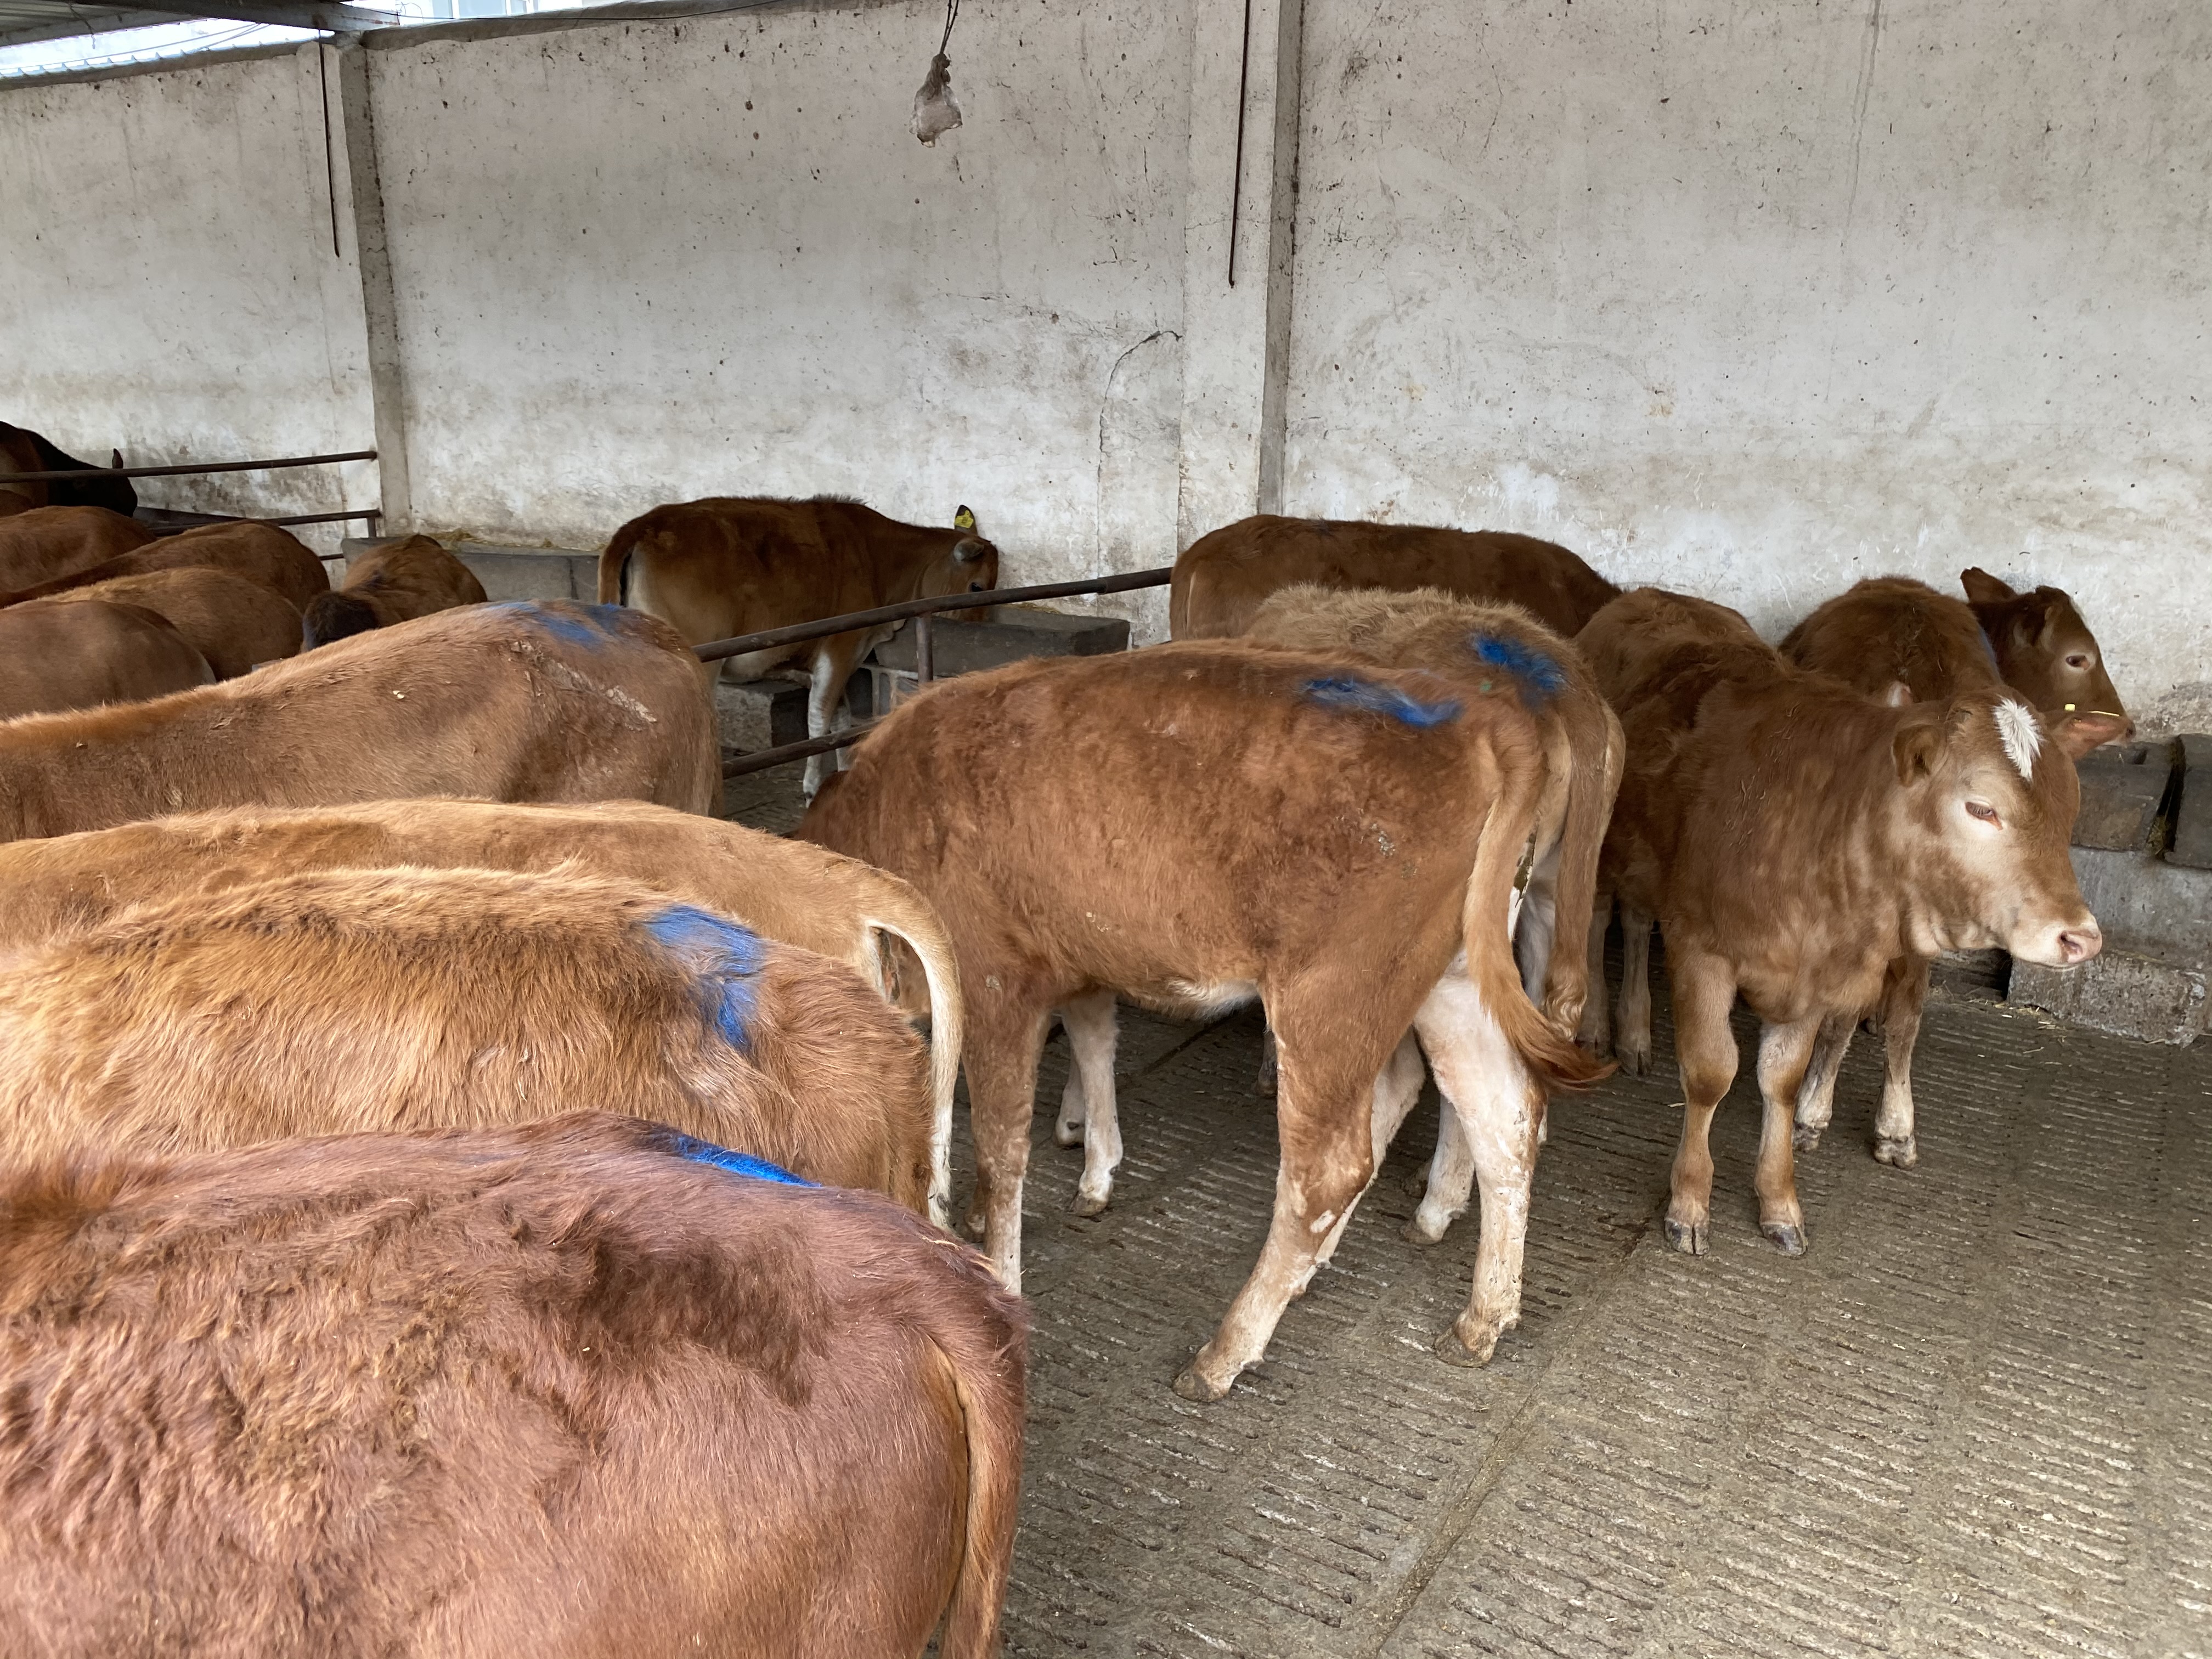 夏洛莱牛 鲁西黄牛 湖南欣旺达肉牛养殖场常年对外出售优良肉牛肉牛犊 西门塔尔牛 利木赞牛6